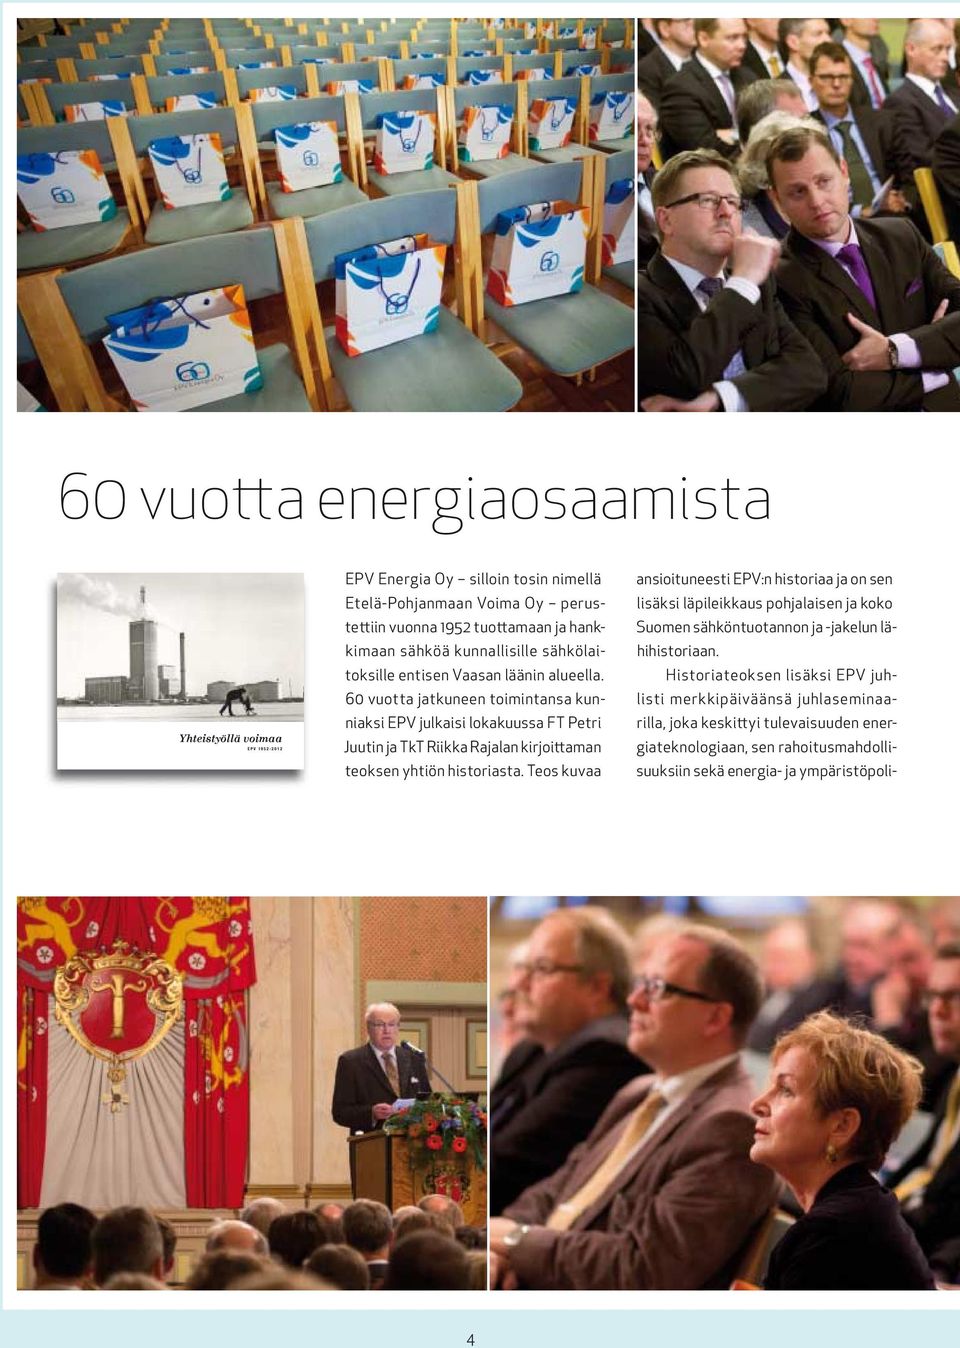 60 vuotta jatkuneen toimintansa kunniaksi EPV julkaisi lokakuussa FT Petri Juutin ja TkT Riikka Rajalan kirjoittaman teoksen yhtiön historiasta.